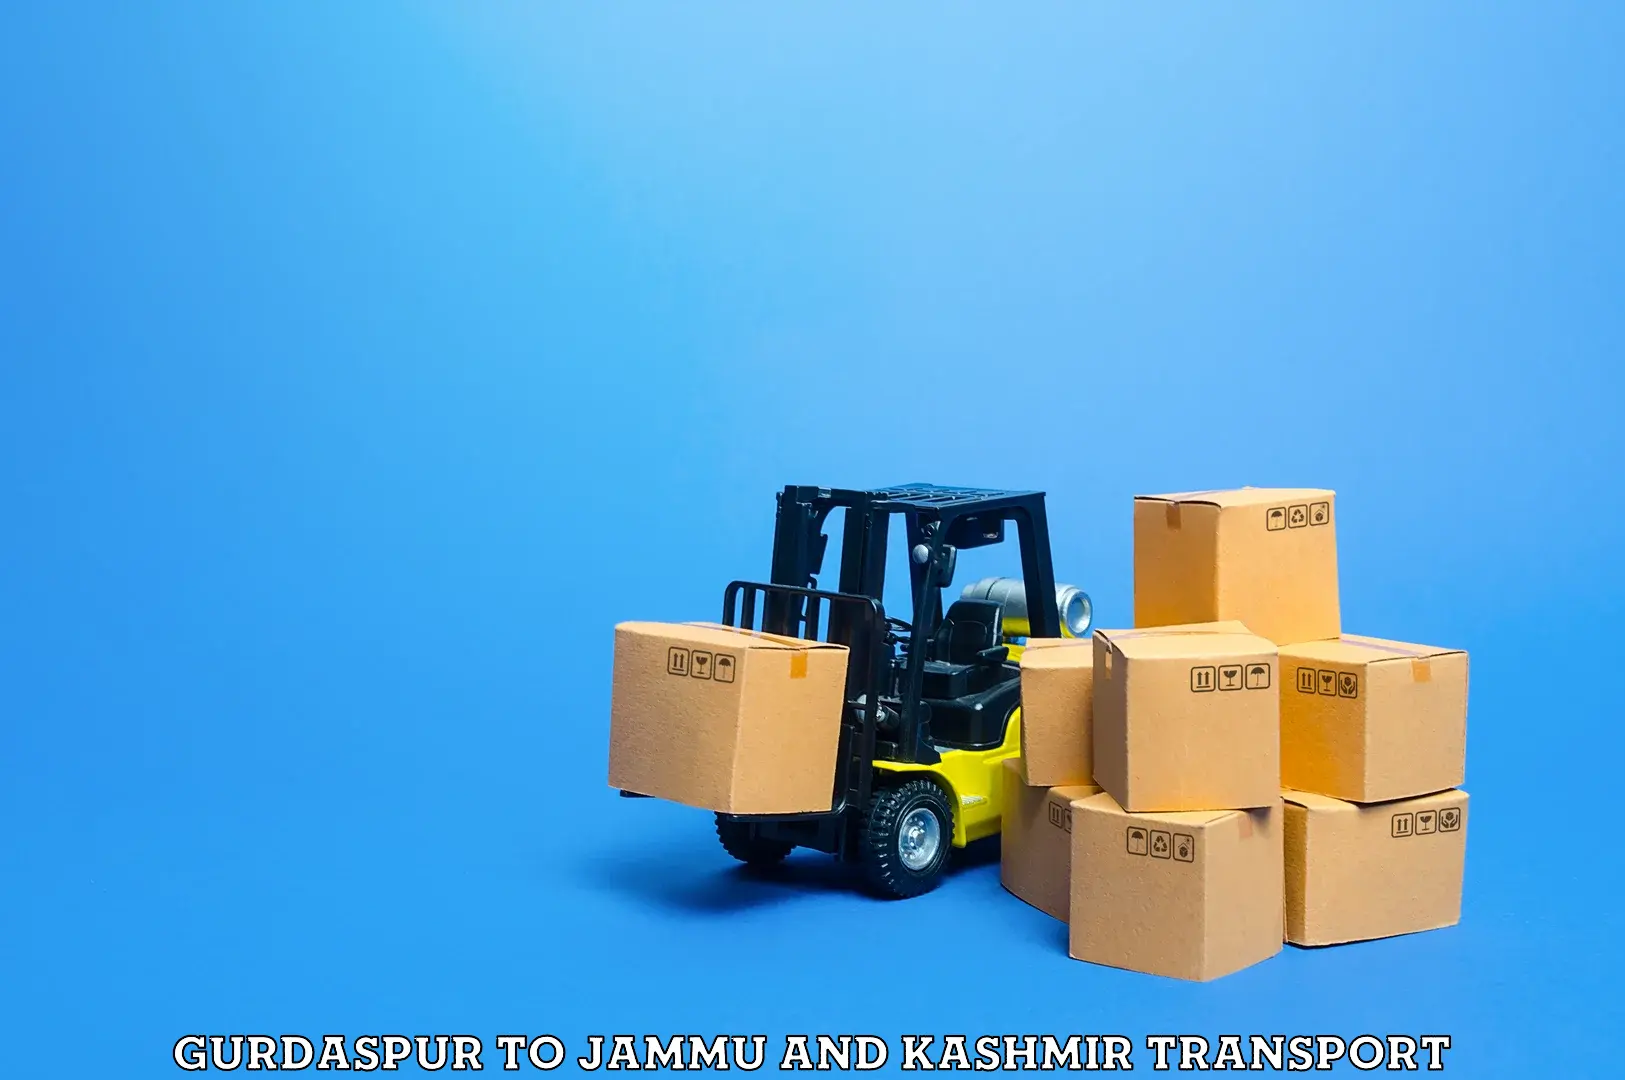 Cargo transport services Gurdaspur to IIT Jammu